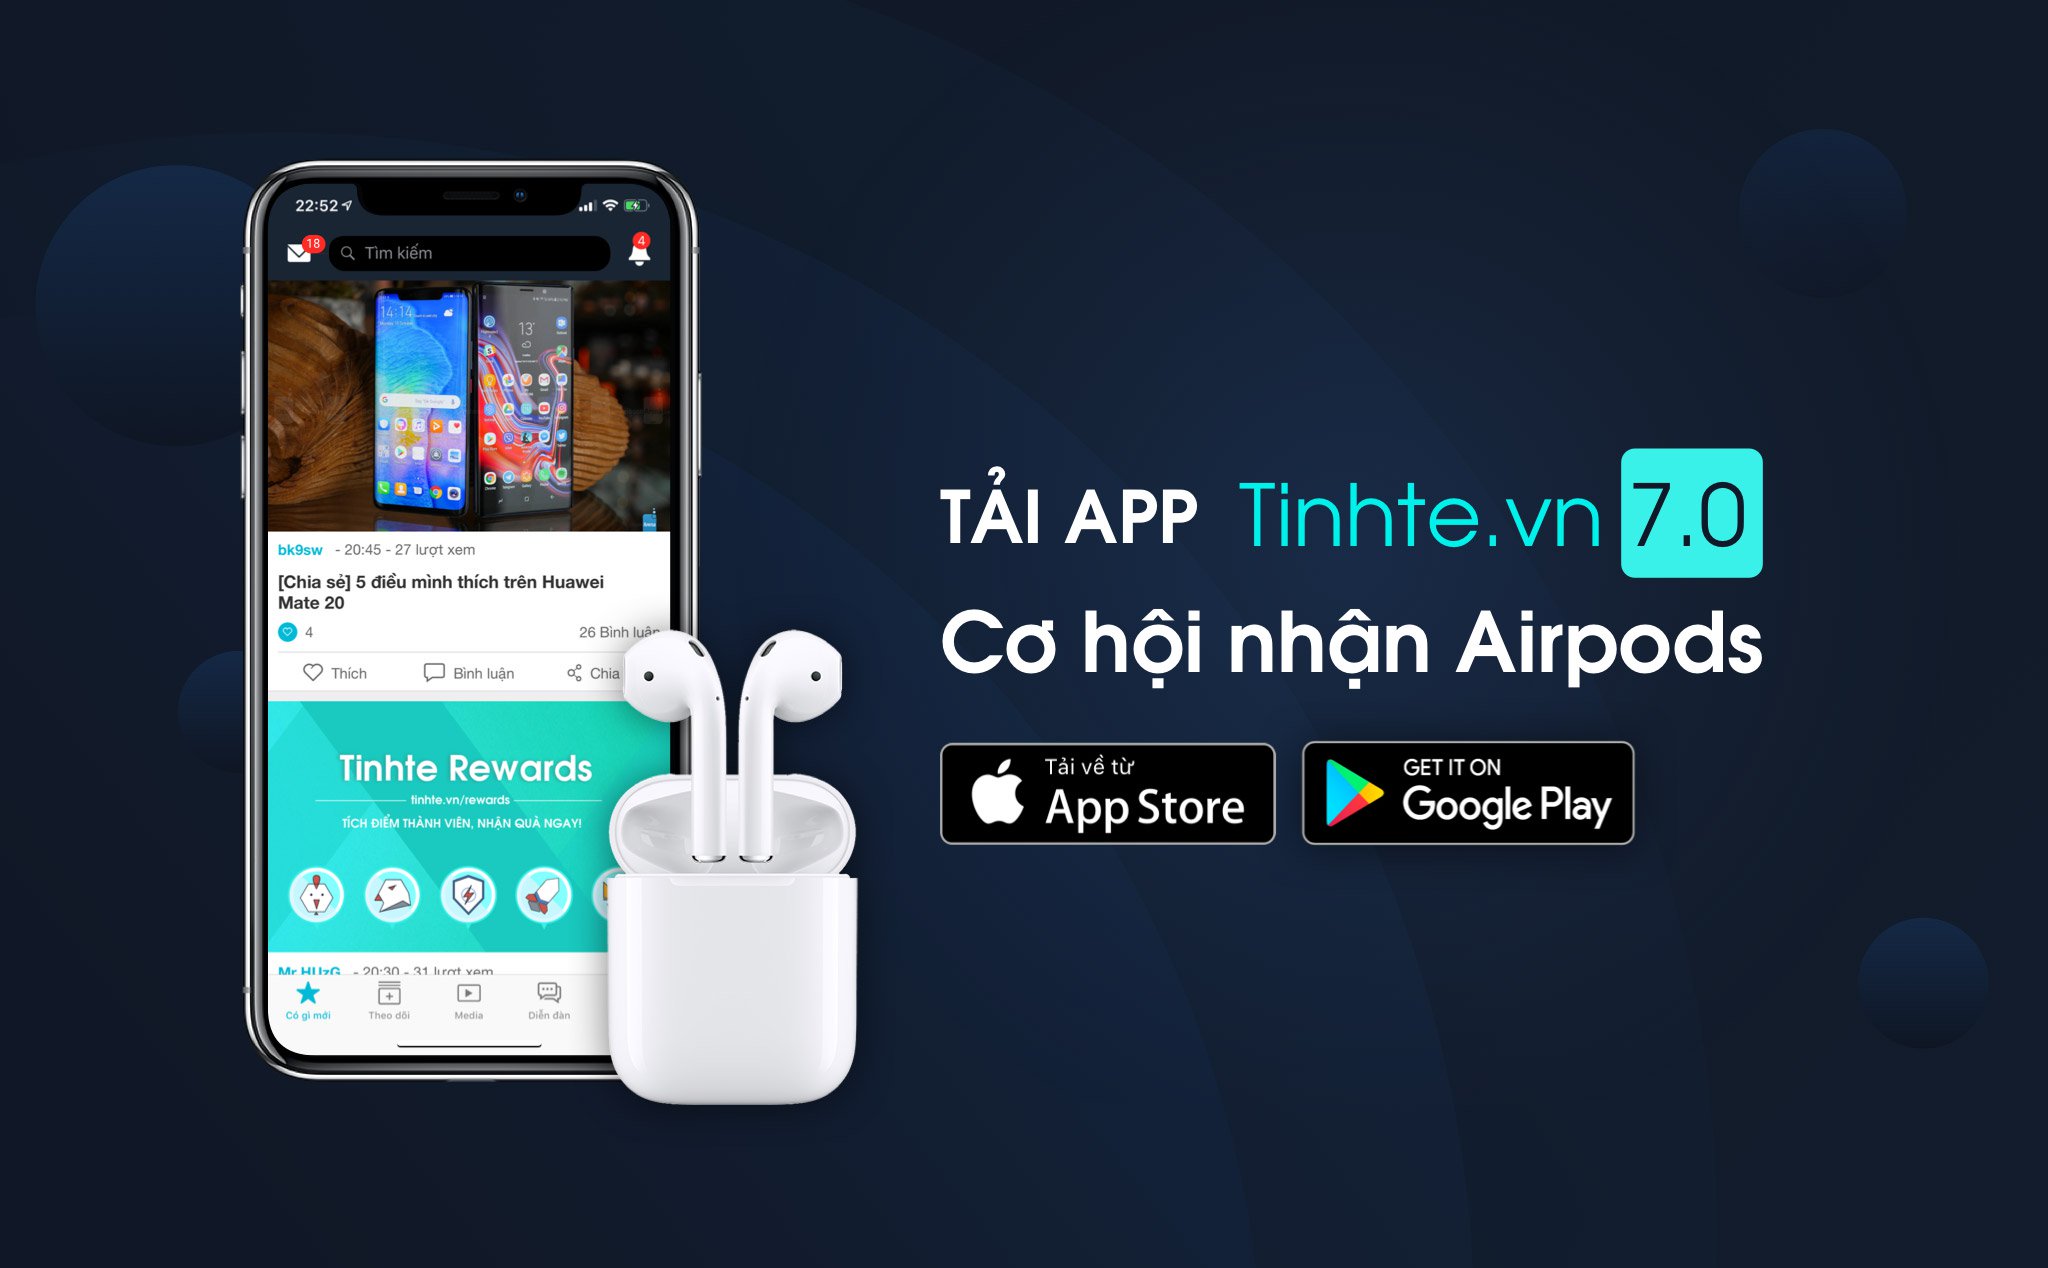 Chúc mừng bạn khunnic đã trúng AirPods dịp ra mắt app Tinh Tế